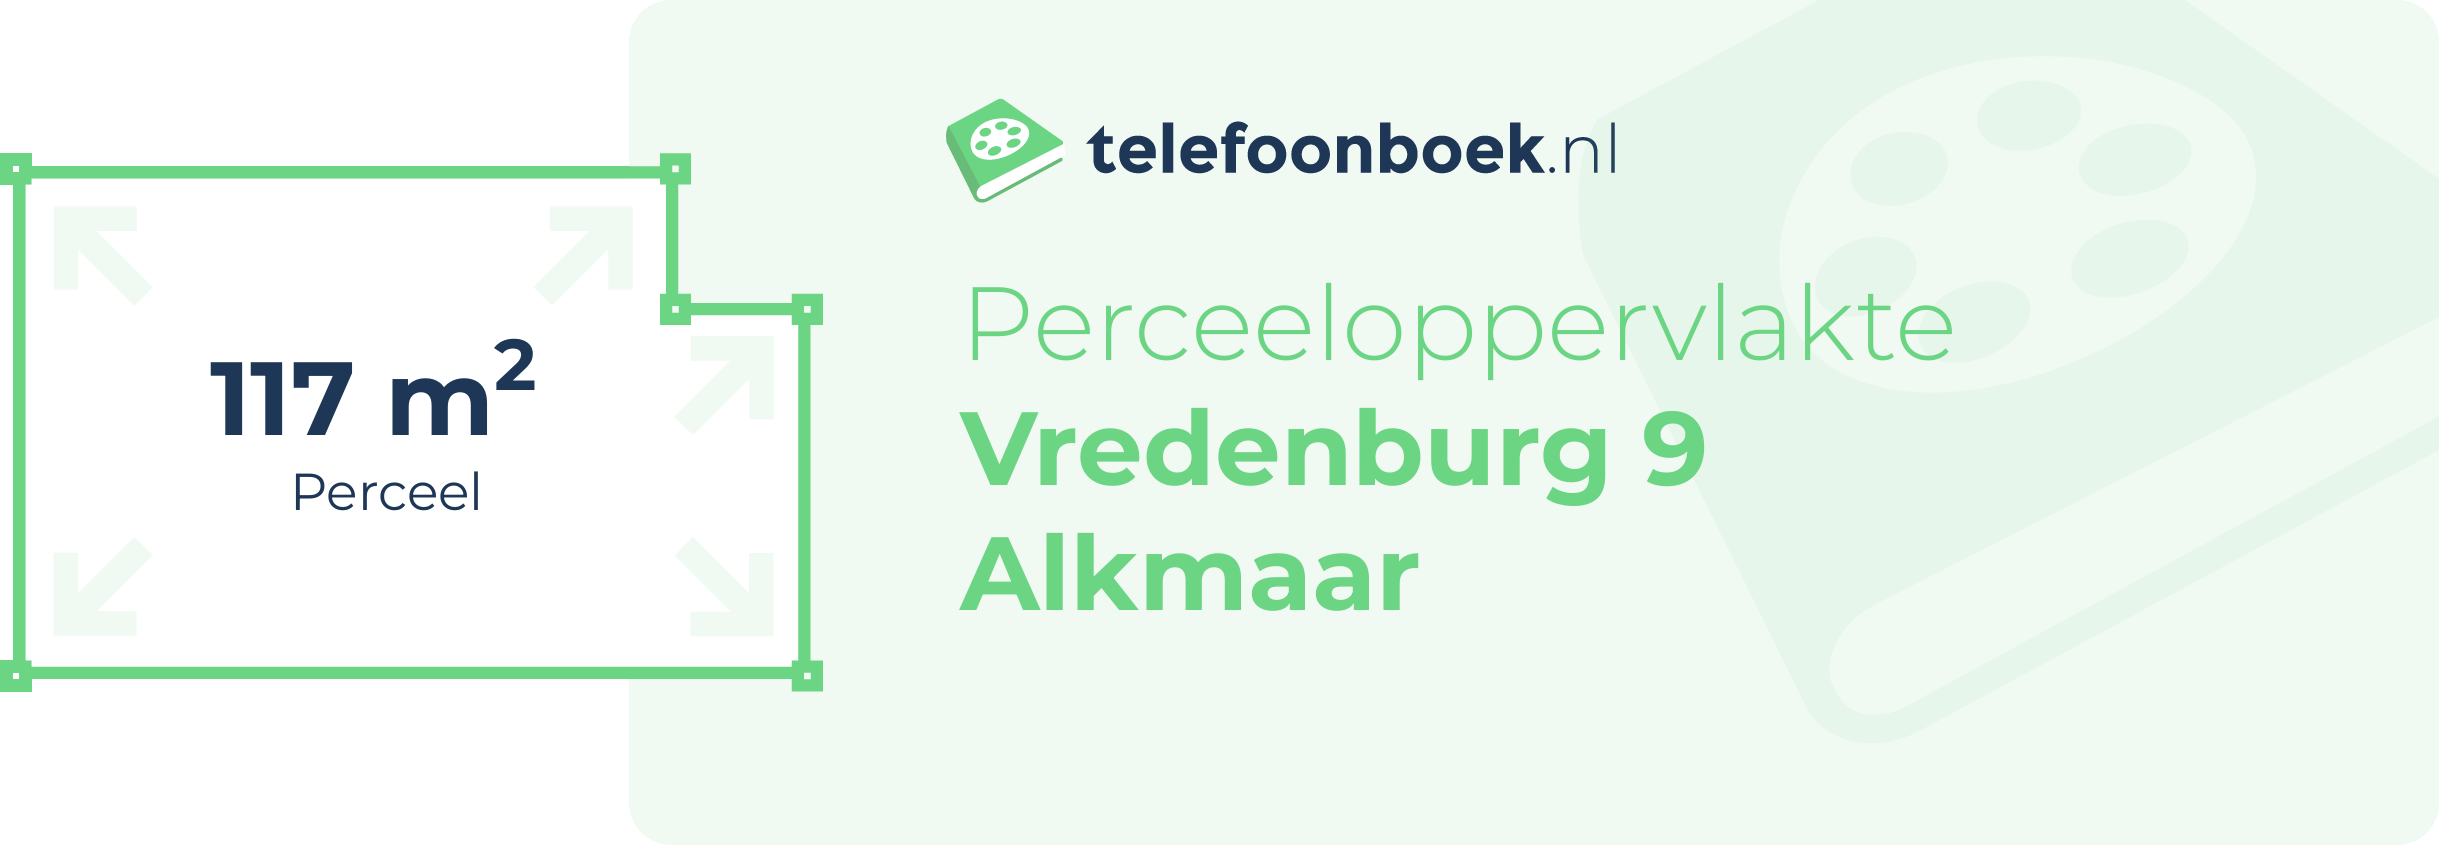 Perceeloppervlakte Vredenburg 9 Alkmaar